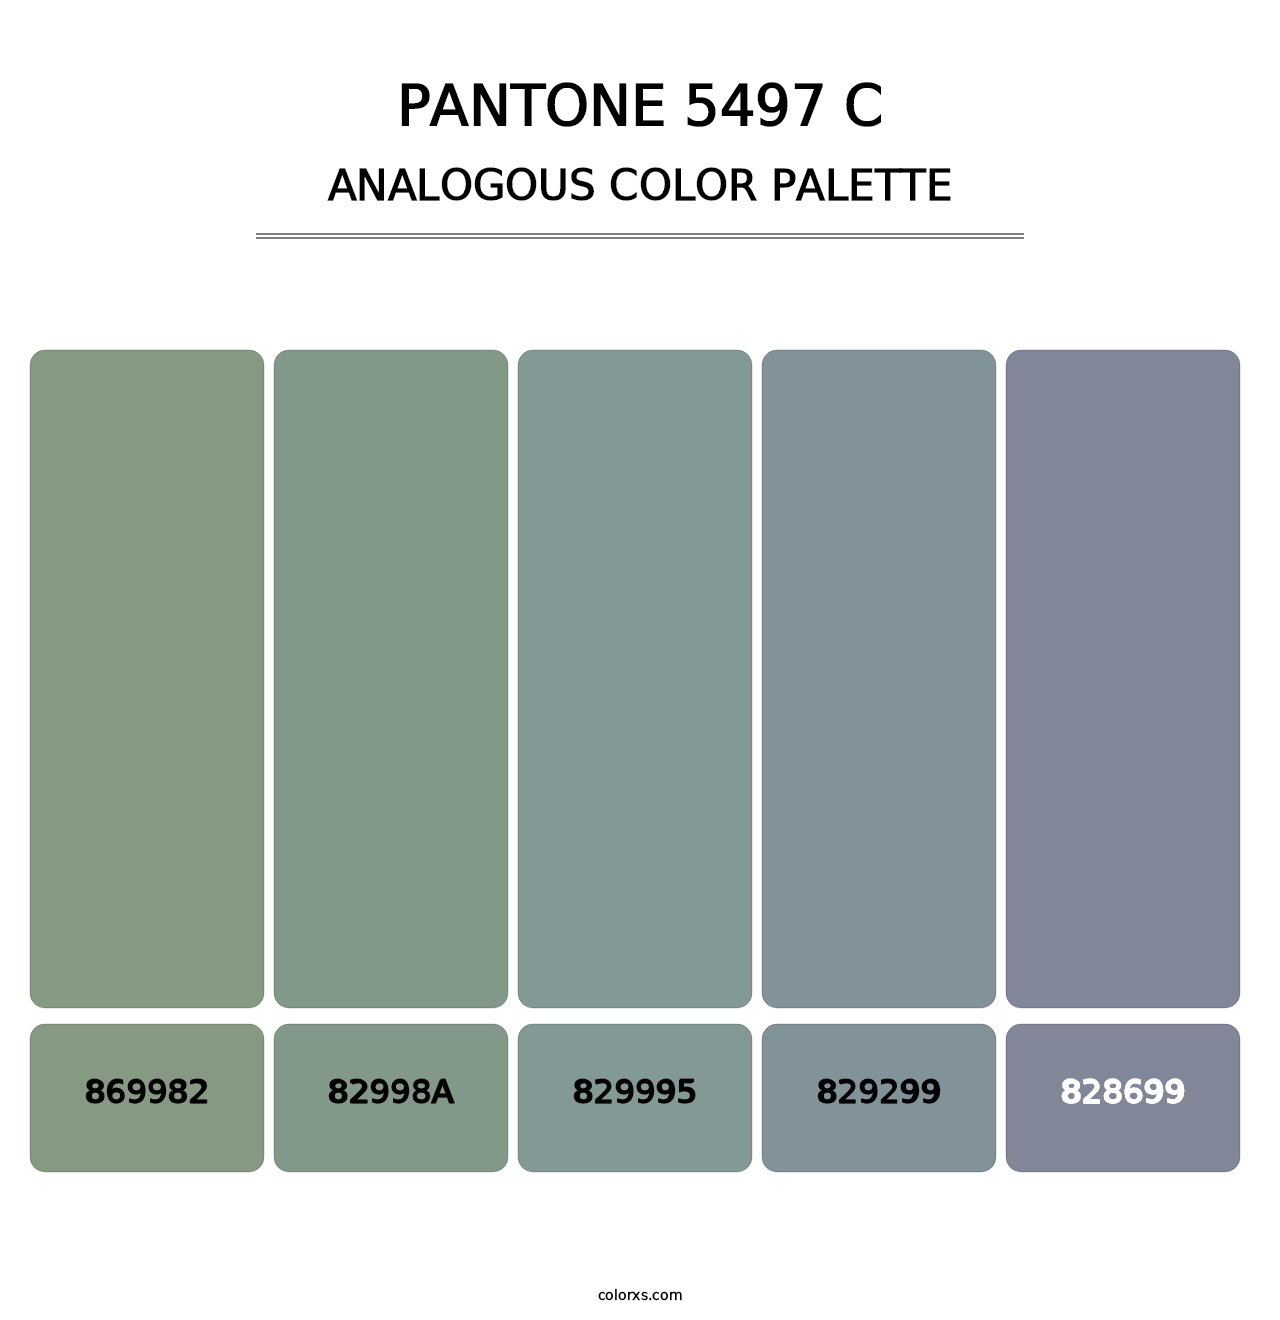 PANTONE 5497 C - Analogous Color Palette